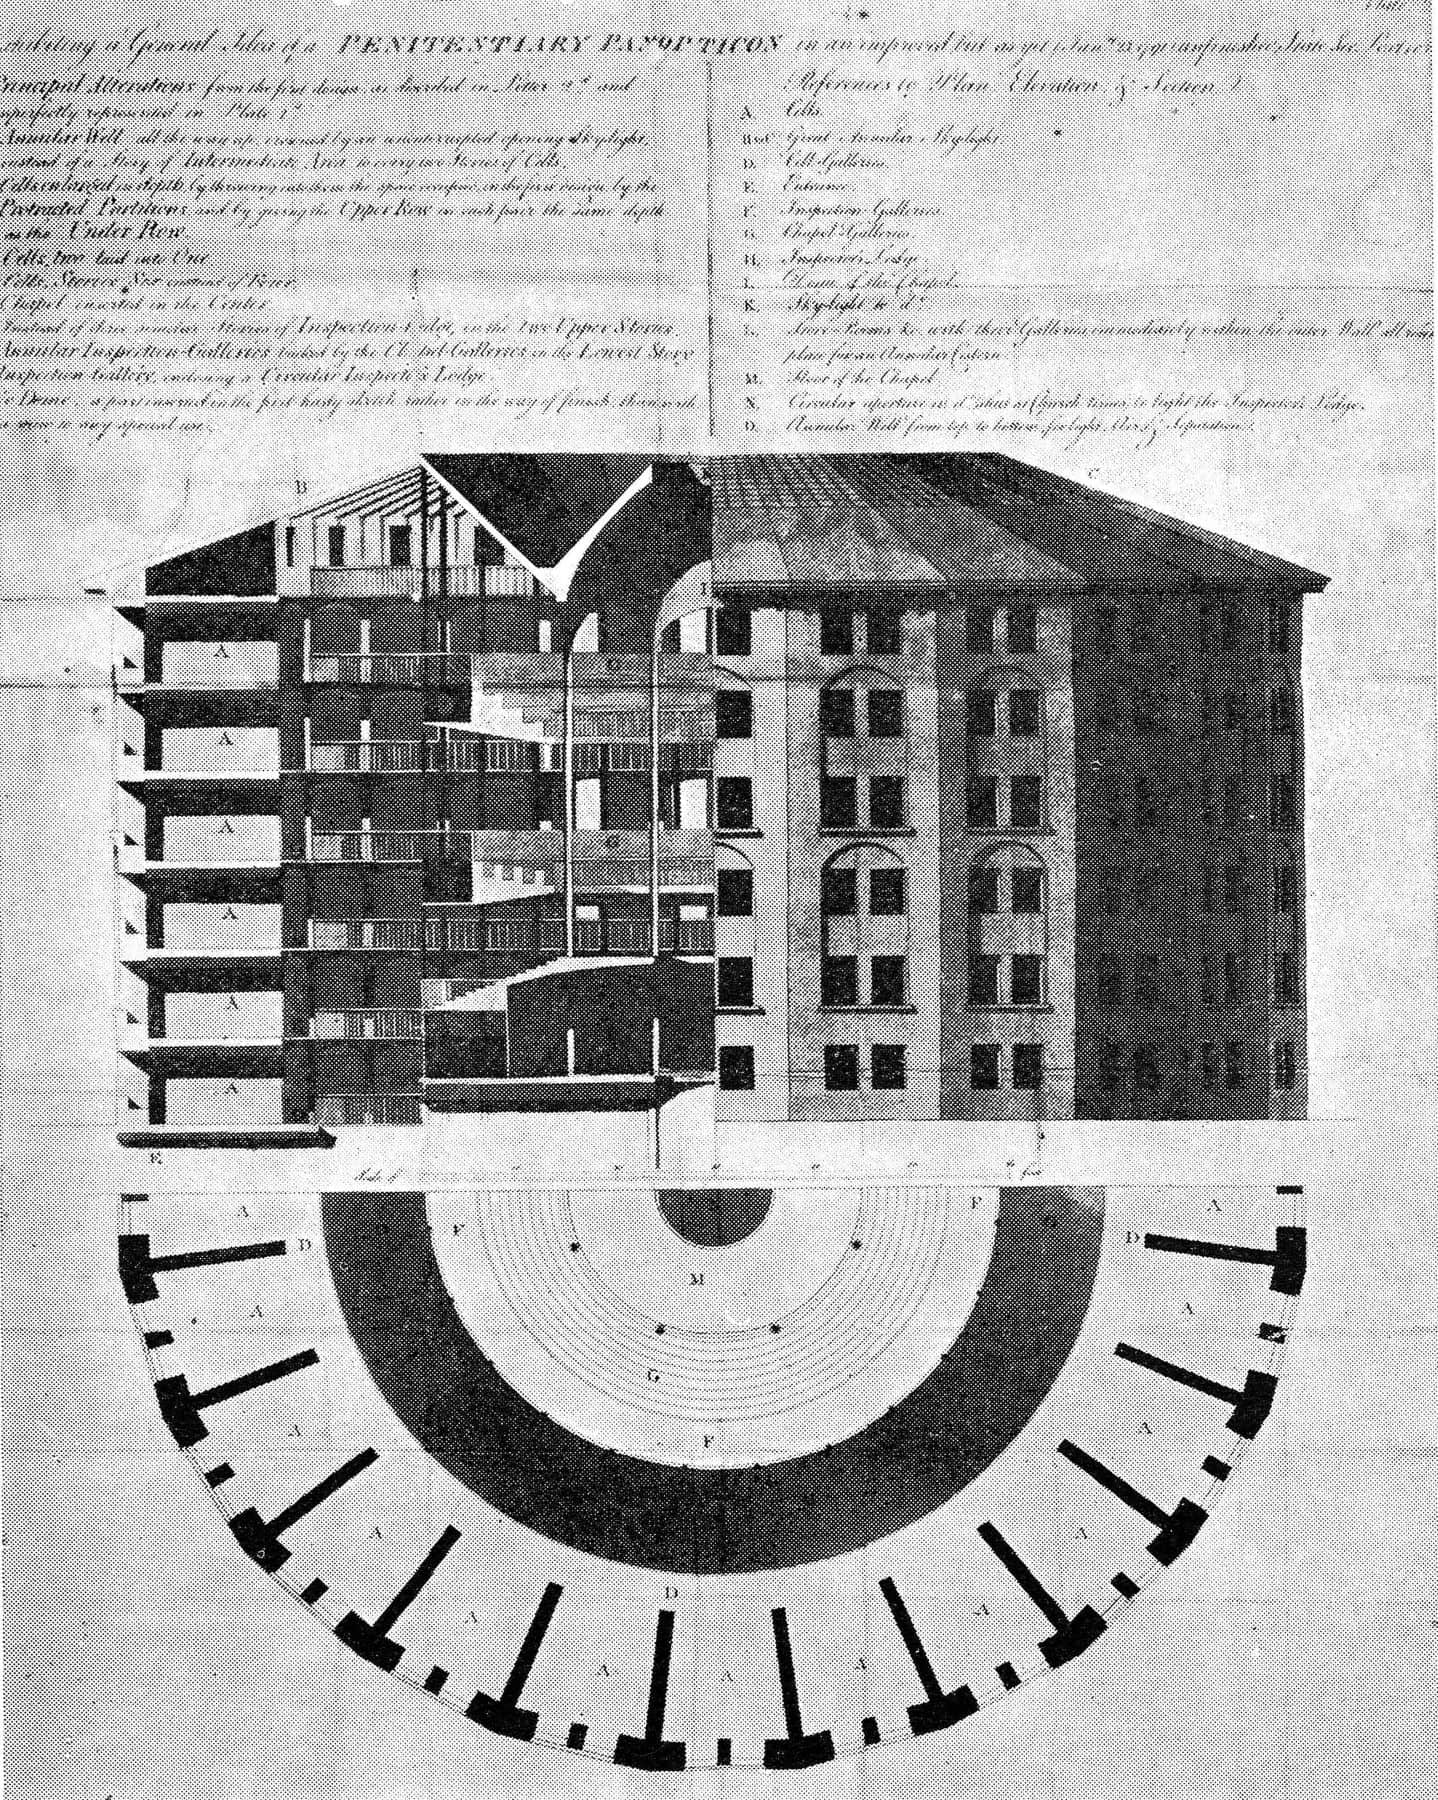 “全景敞视监狱”——这是1791年改进后的方案，由Willey Reveley绘制。一个直径120英尺的圆形大厅，容纳约460名囚犯；大部分内部结构和固定件为铸铁。与该方案相关的制度机制是“缓和的隔离”——数个囚犯被关在一个牢房里；教堂礼拜和锻炼尽管受到高度管制，但是集体性的